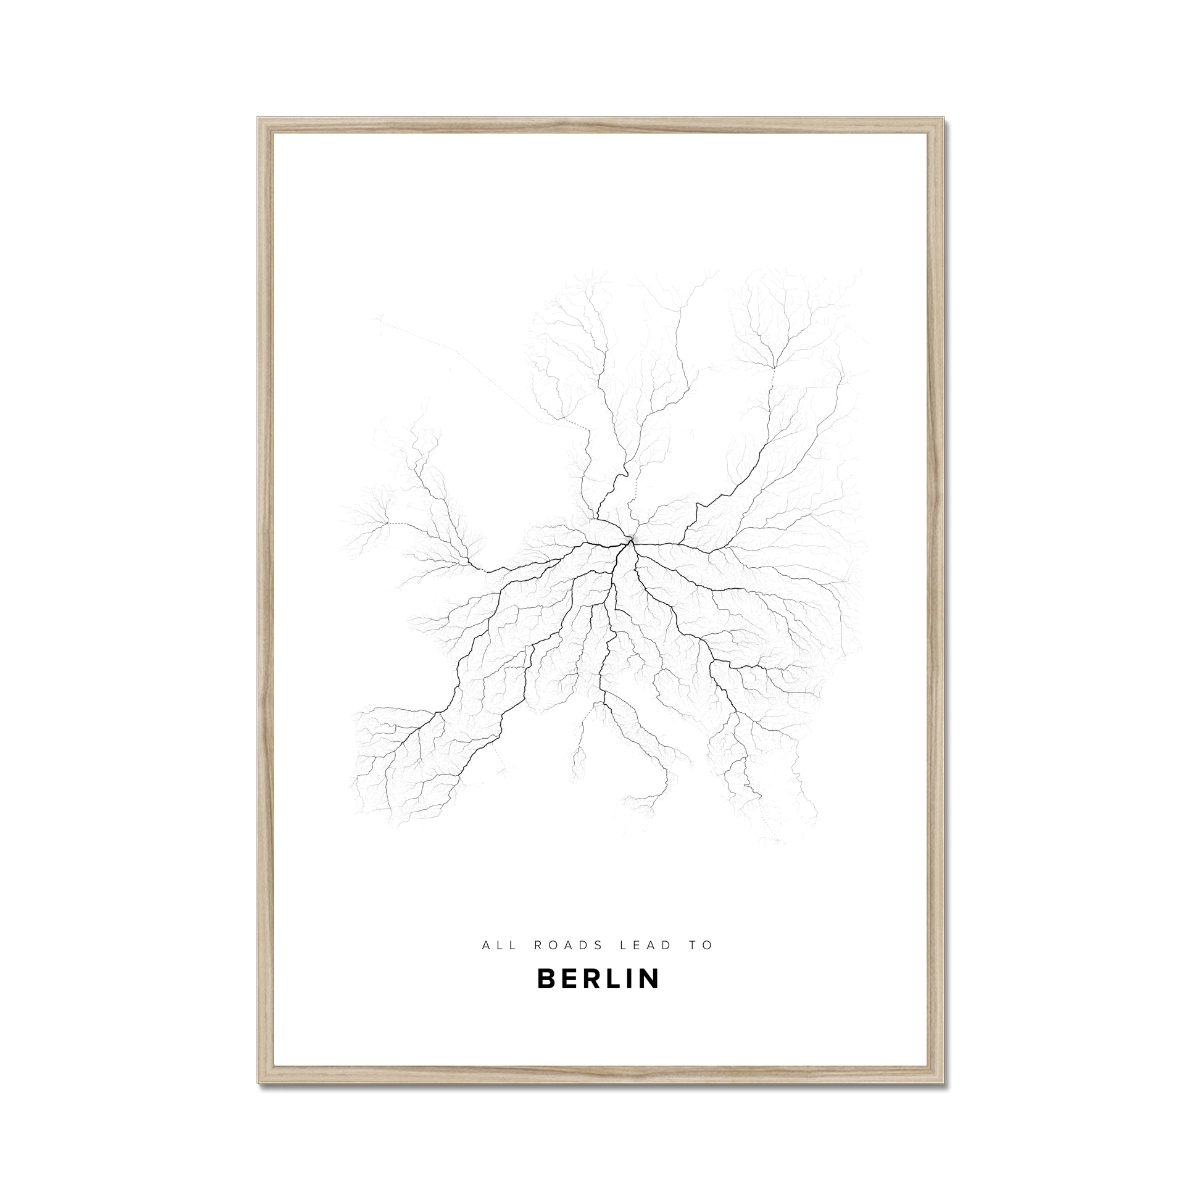 All roads lead to Berlin (Germany) Fine Art Map Print